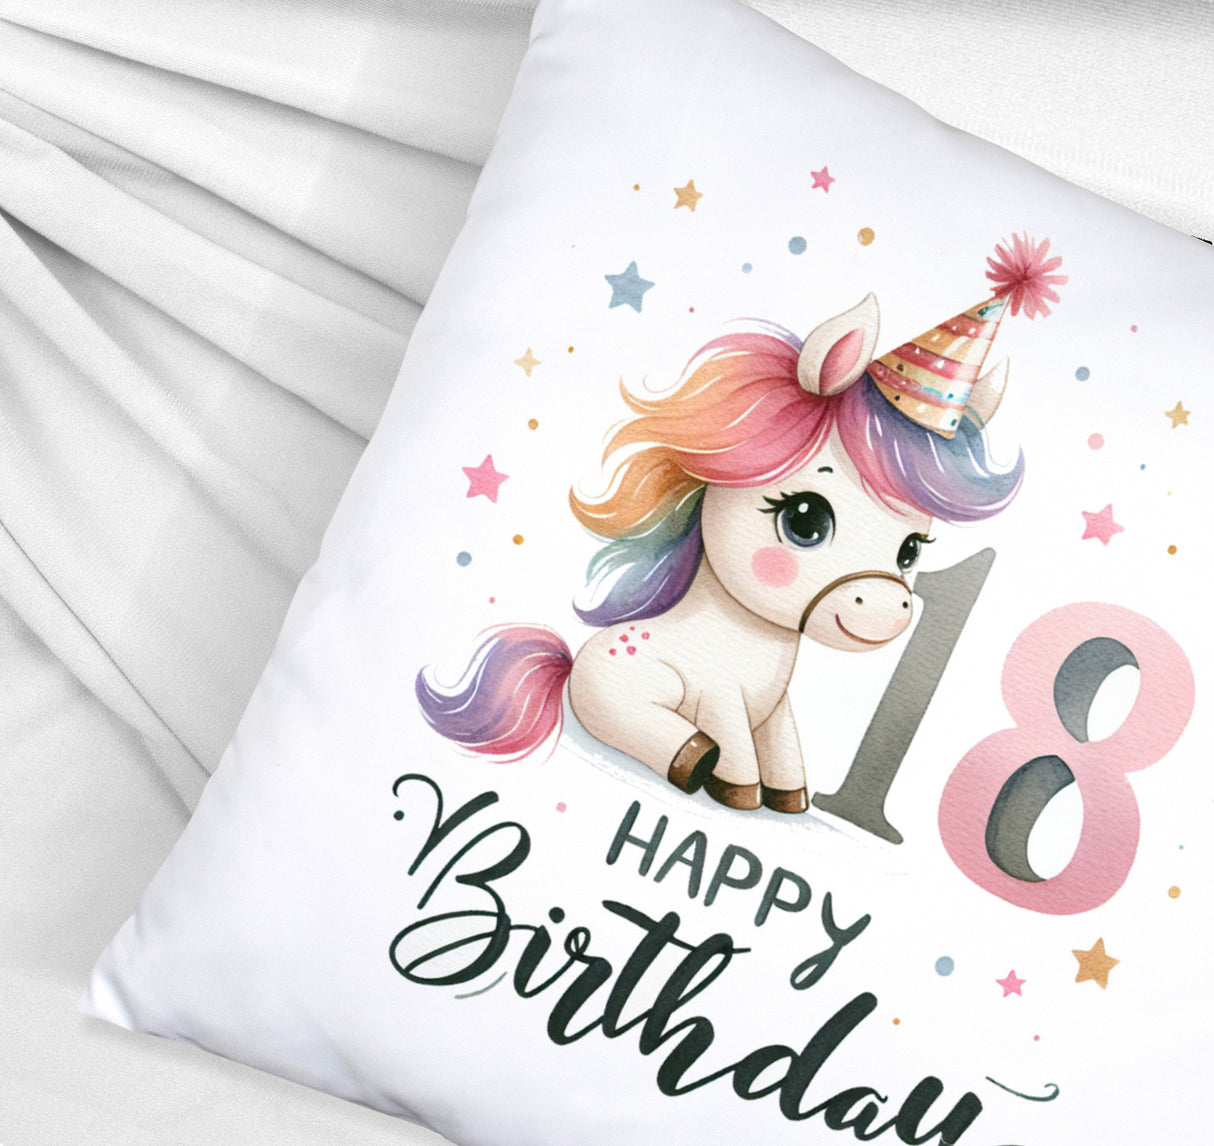 18. Geburtstag mit niedlichem Pferd Kissen mit Spruch Happy Birthday 18